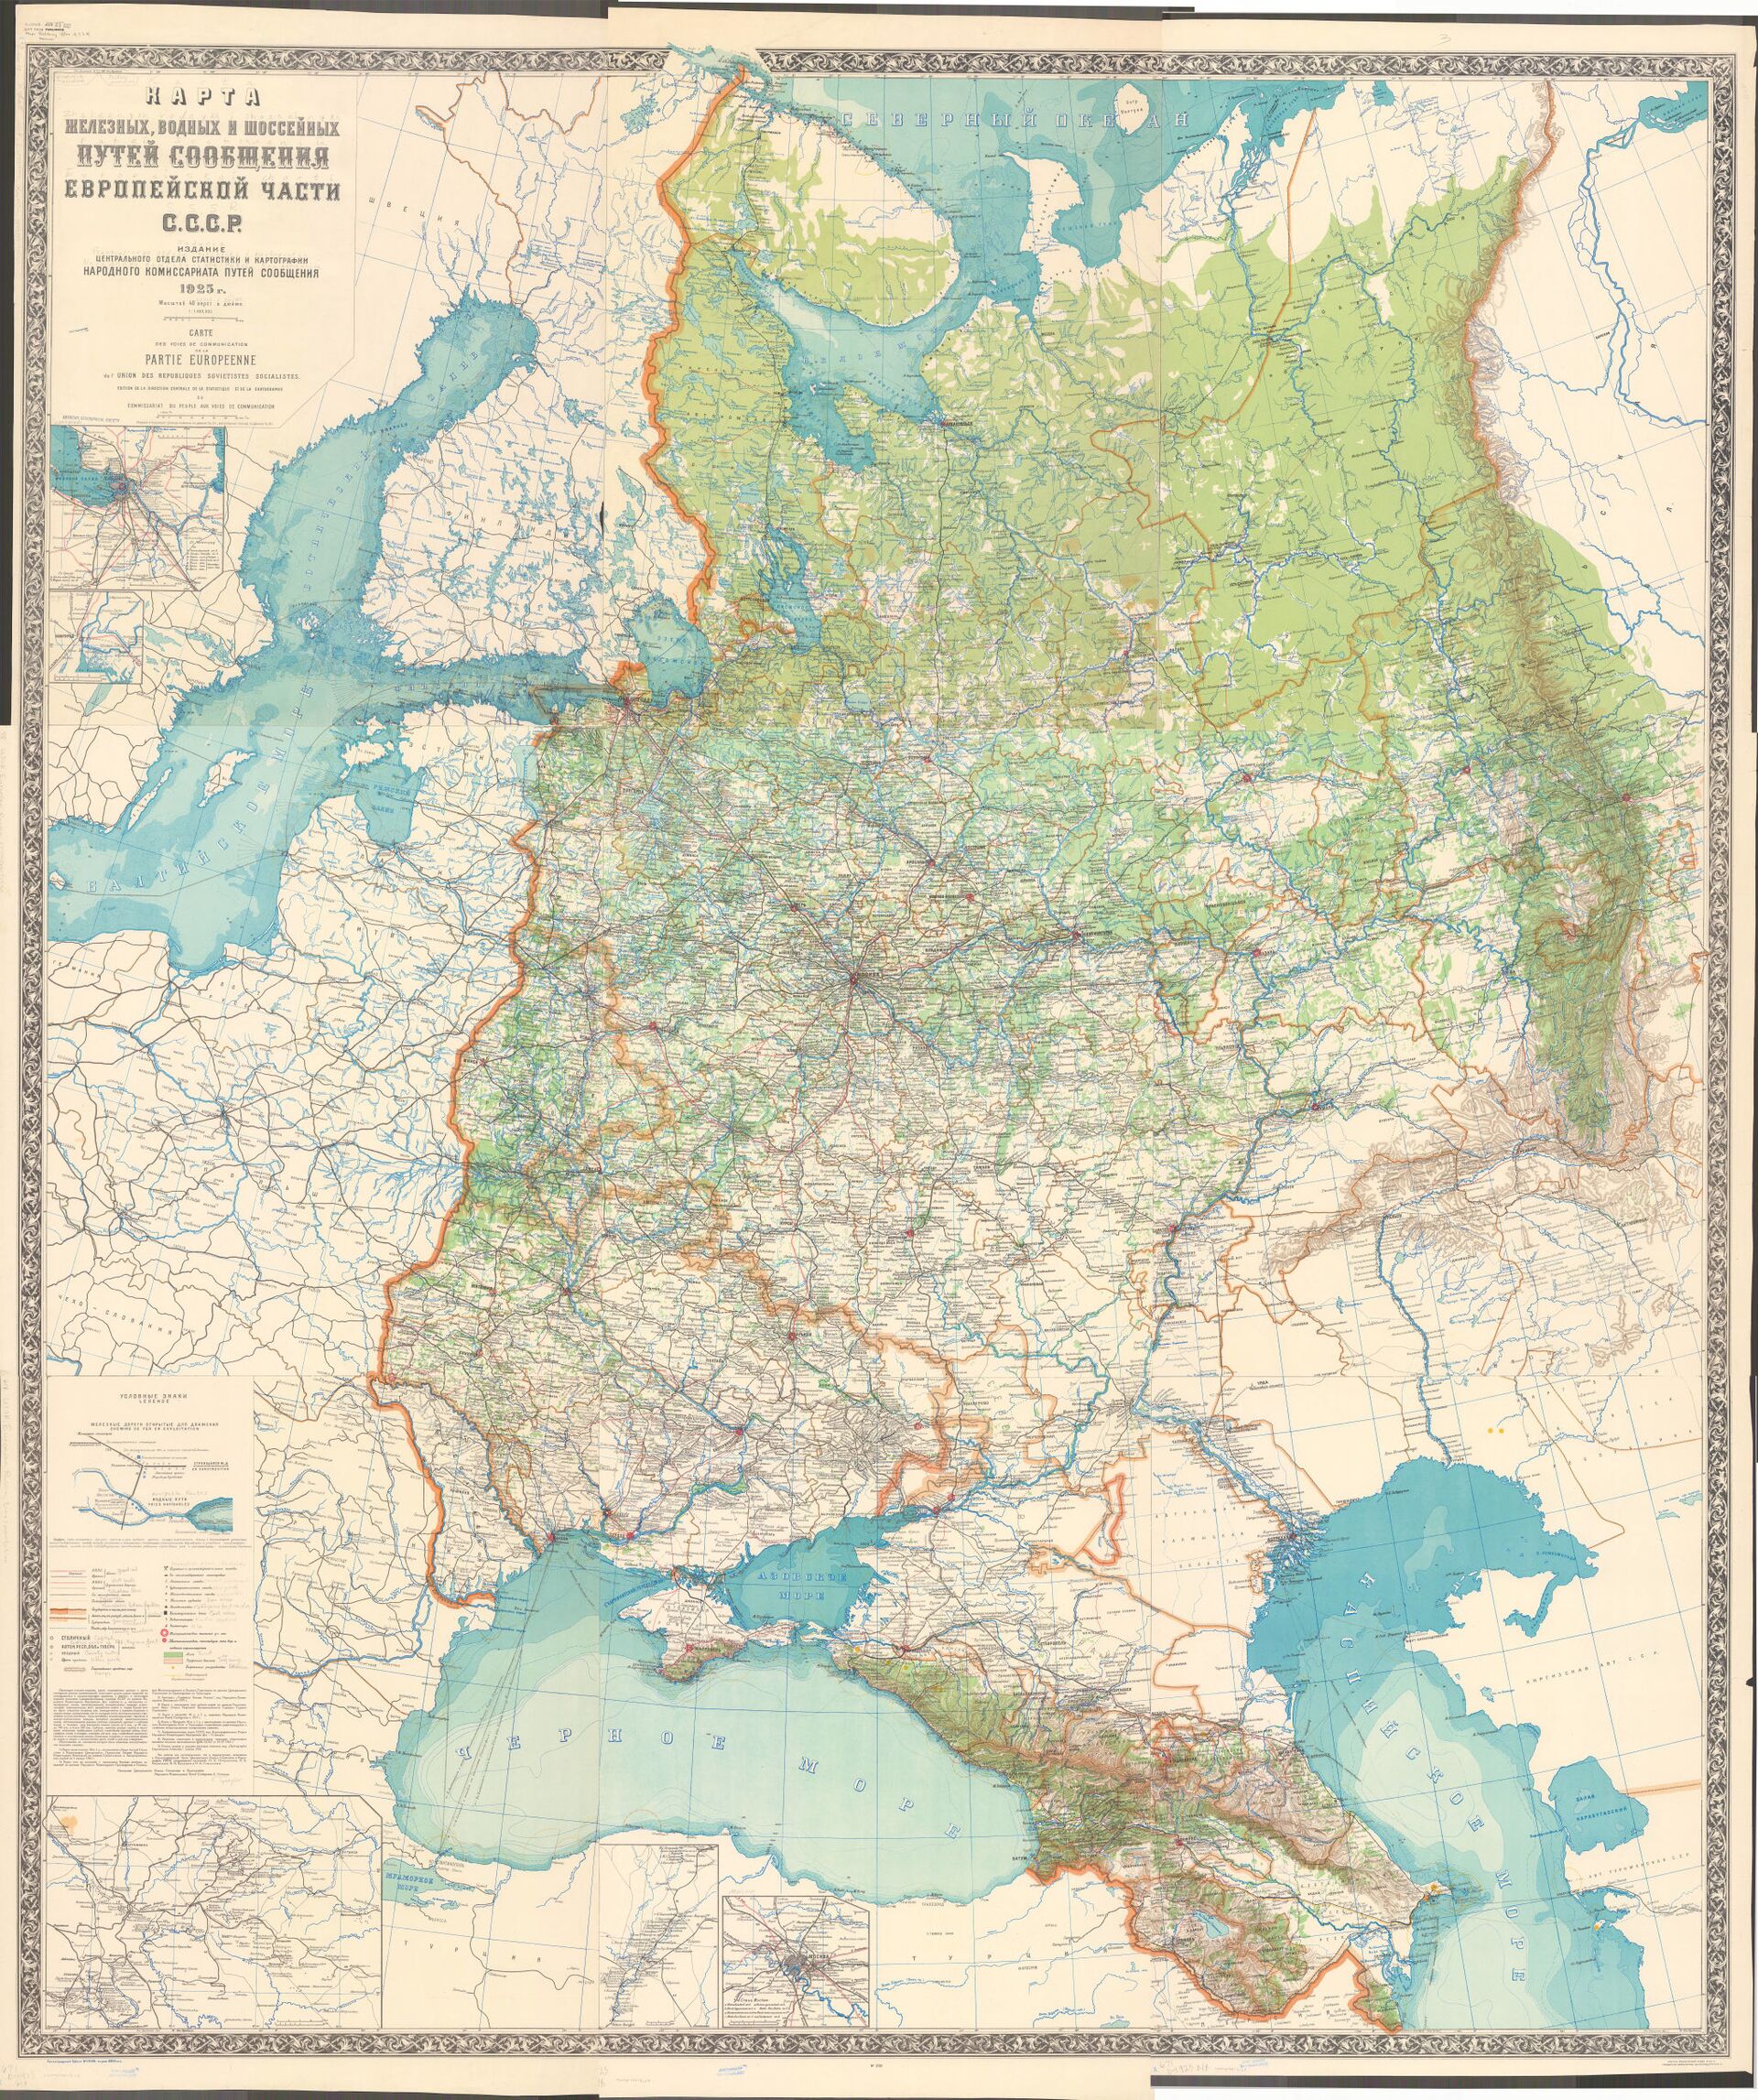 Карта железных дорог, водных и шоссейных путей сообщения Европейской части СССР 1925 г. Бессарабия указана как часть СССР. - Sputnik Молдова, 1920, 20.07.2021